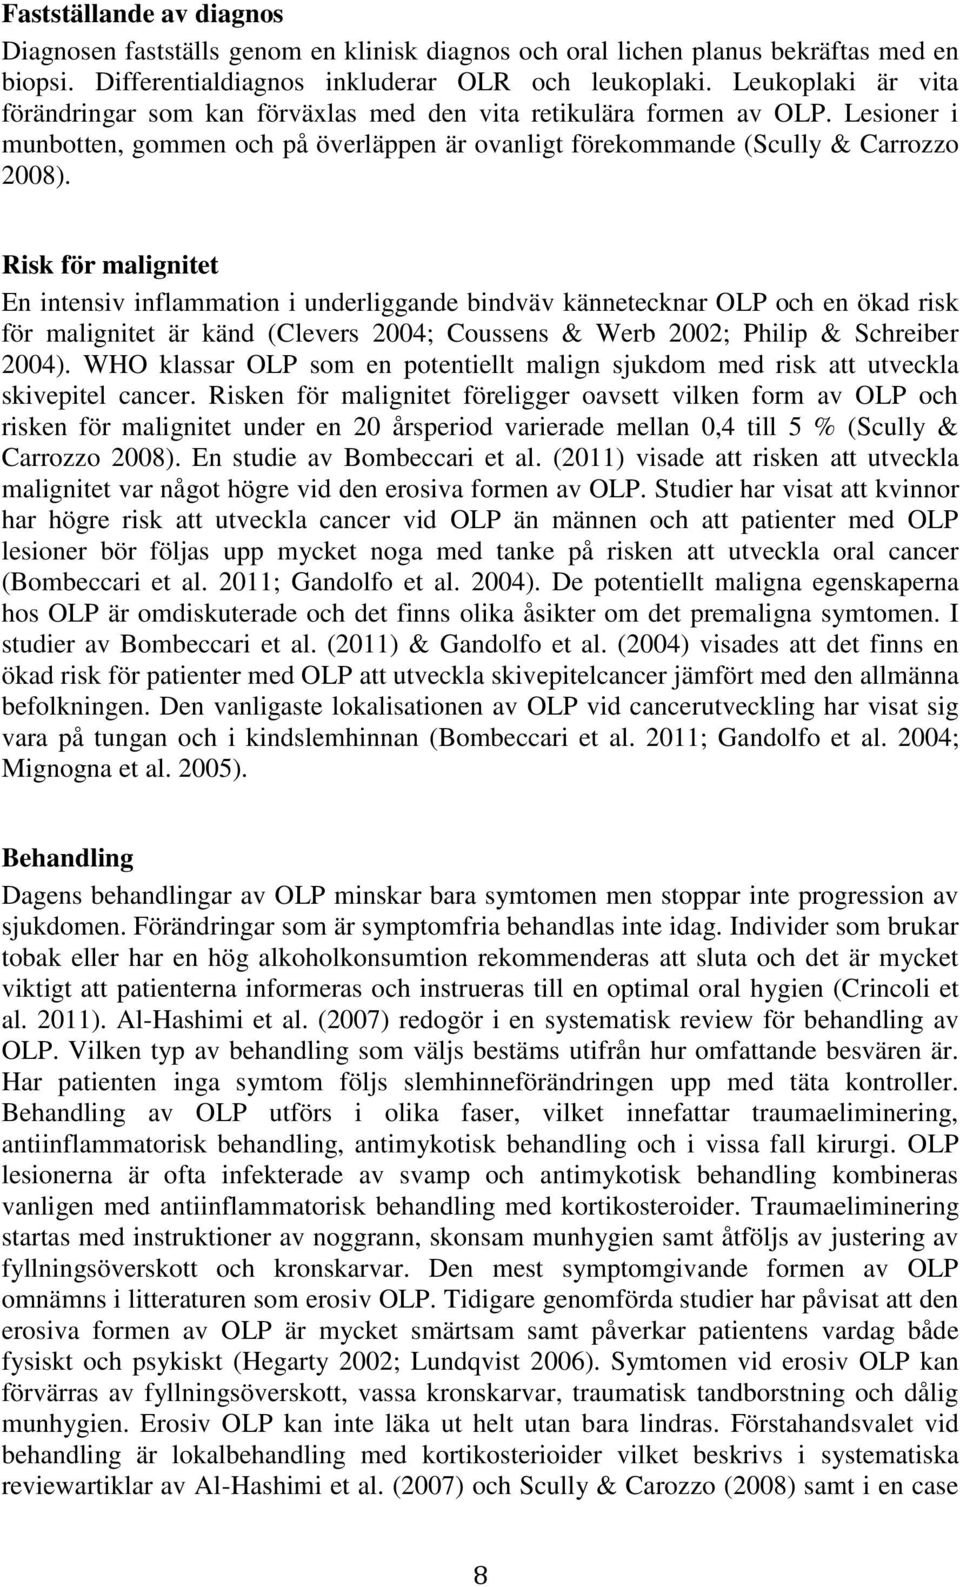 Risk för malignitet En intensiv inflammation i underliggande bindväv kännetecknar OLP och en ökad risk för malignitet är känd (Clevers 2004; Coussens & Werb 2002; Philip & Schreiber 2004).